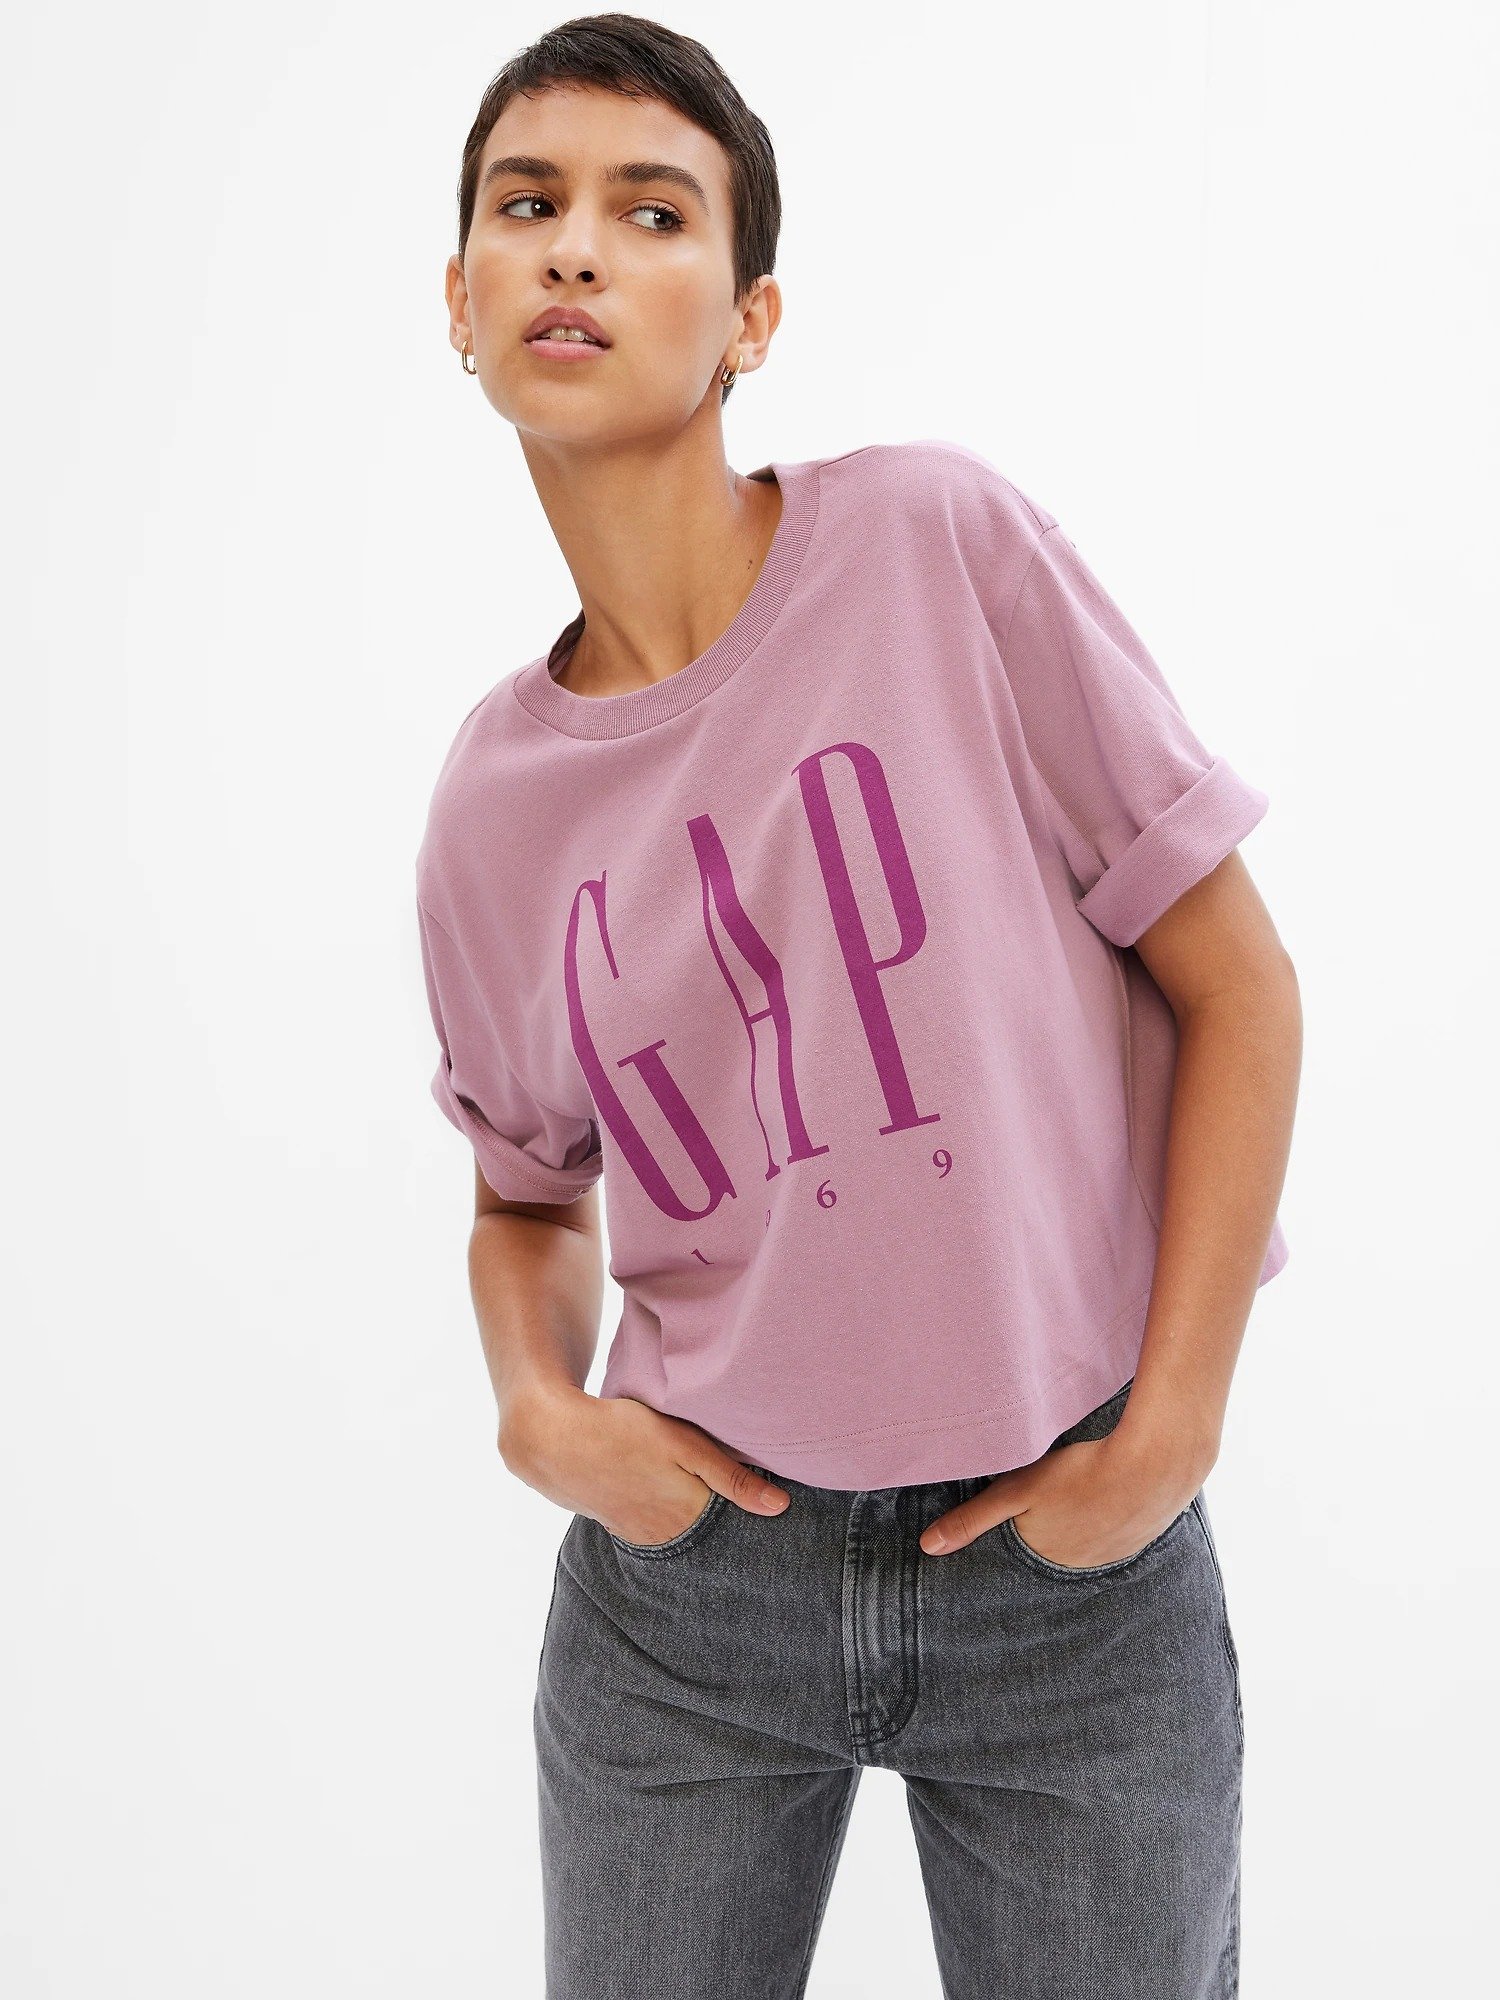 Gap Logo Boxy Jarse T-Shirt product image